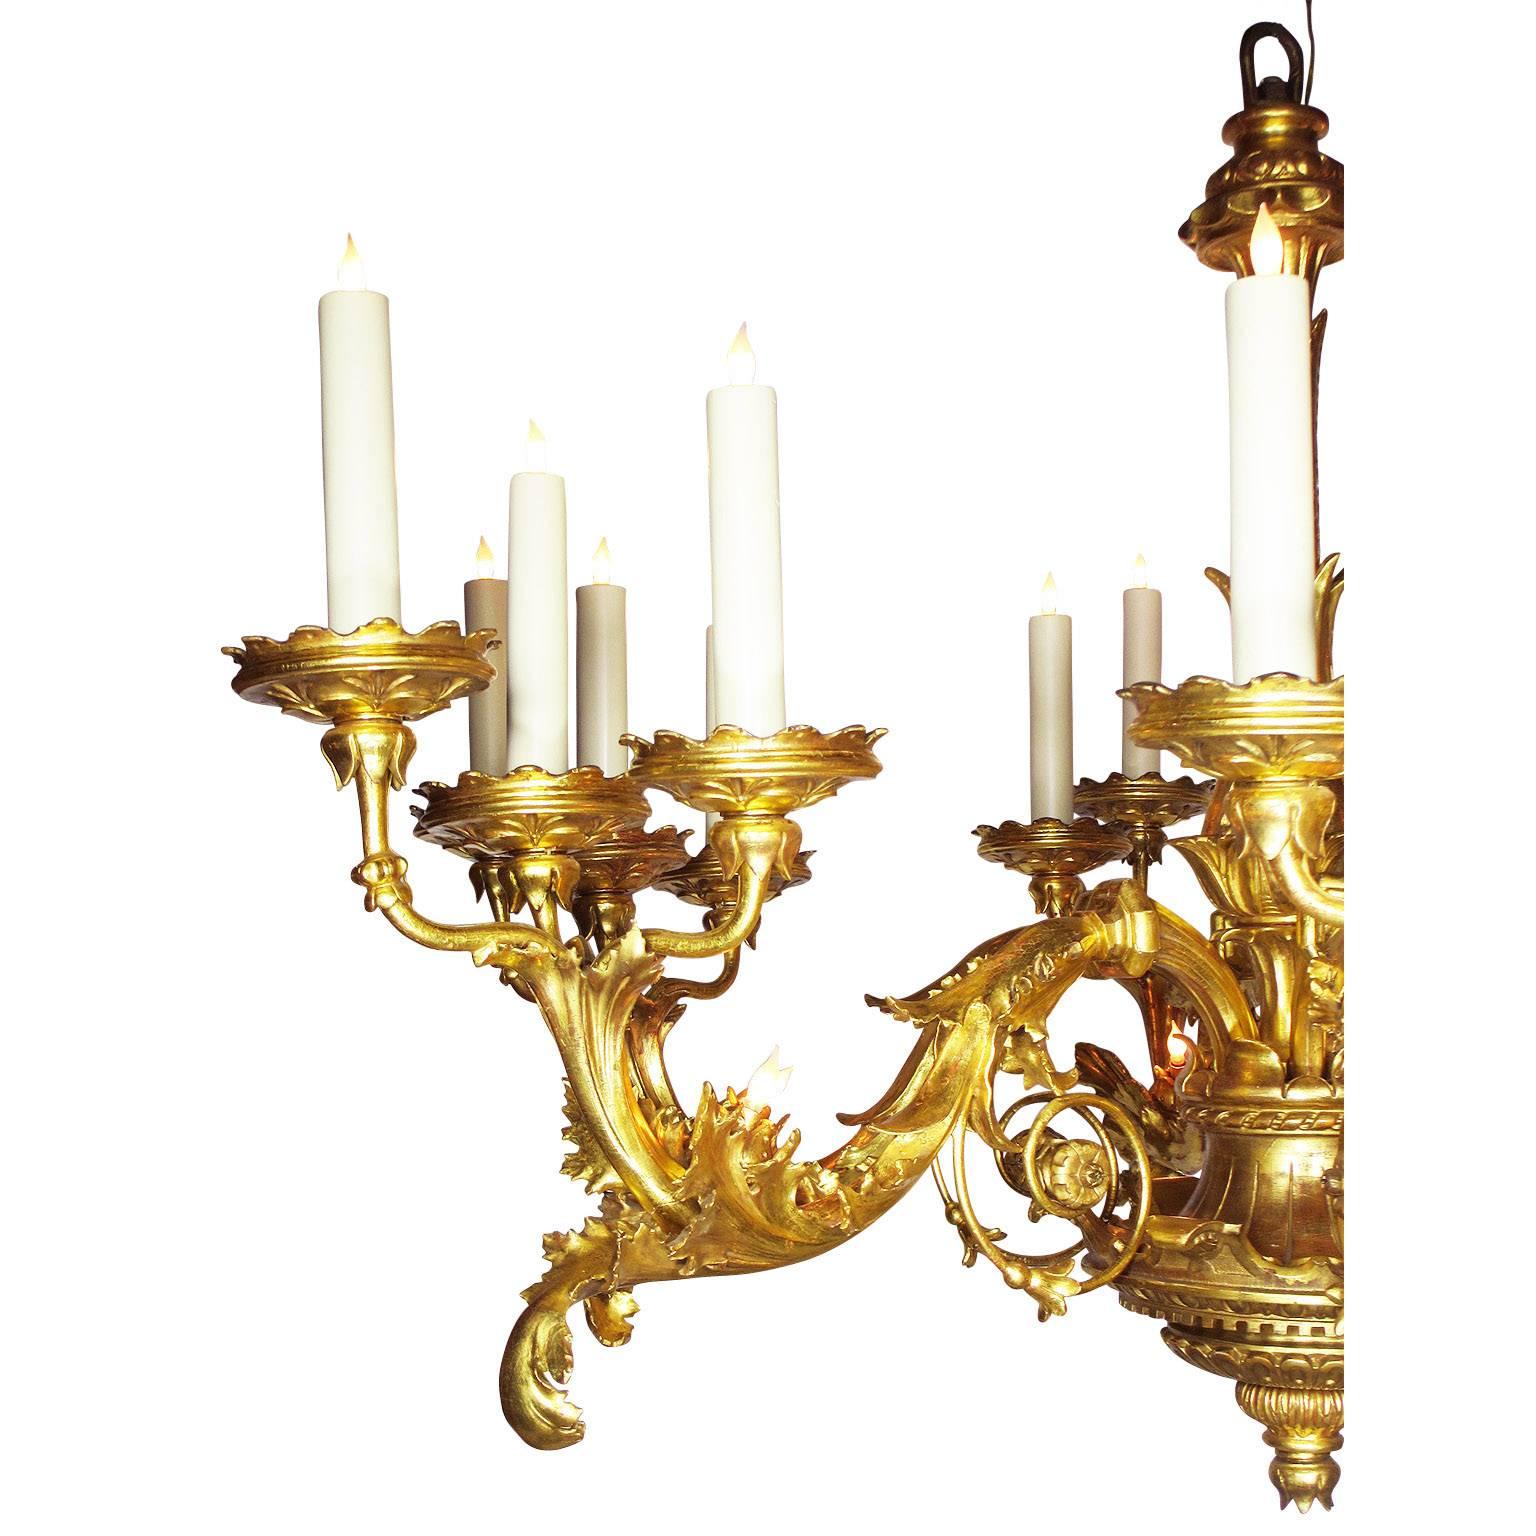 Eine wichtige palastartige sehr fein und selten Italienisch 19. Jahrhundert Florentine Rokoko vergoldet geschnitzt sechs-Kerze Arme und zwanzig vier-Licht-Kronleuchter, die geschwungenen Kerze-Schale unterstützt sind vergoldetes Eisen. Die